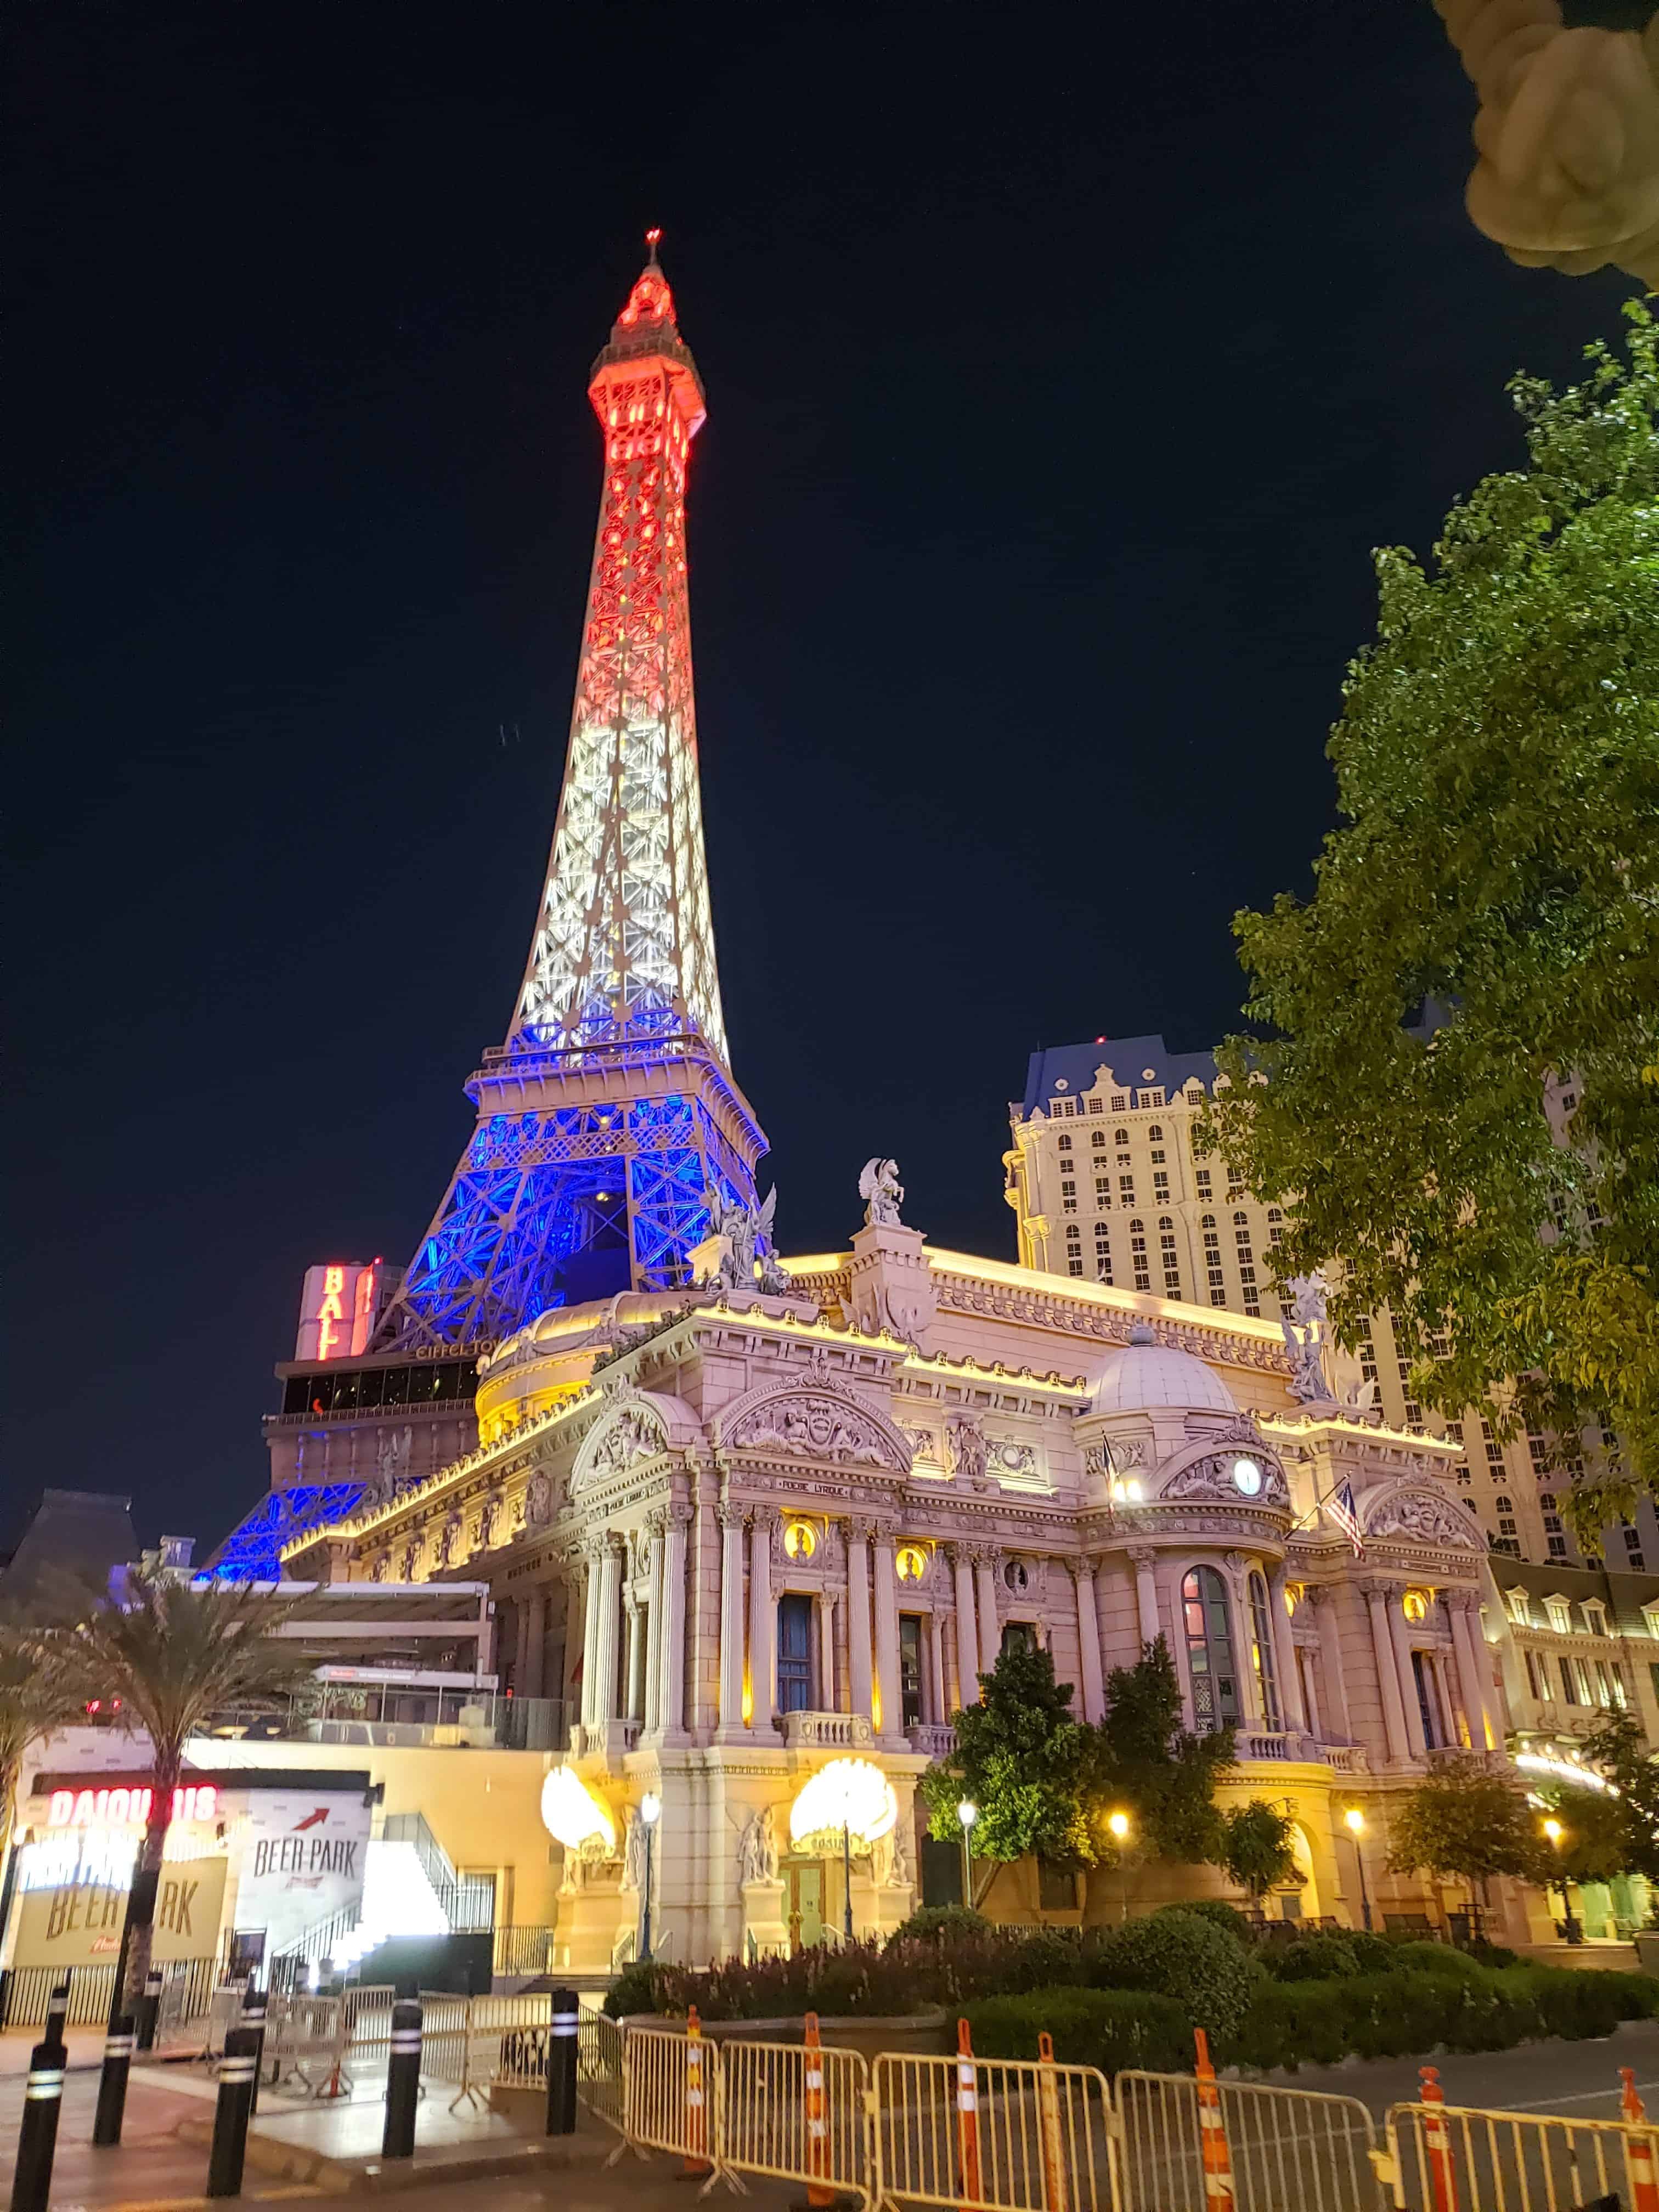 Las Vegas, Nevada, USA, - 2020: Eiffel Tower in Las Vegas. Paris